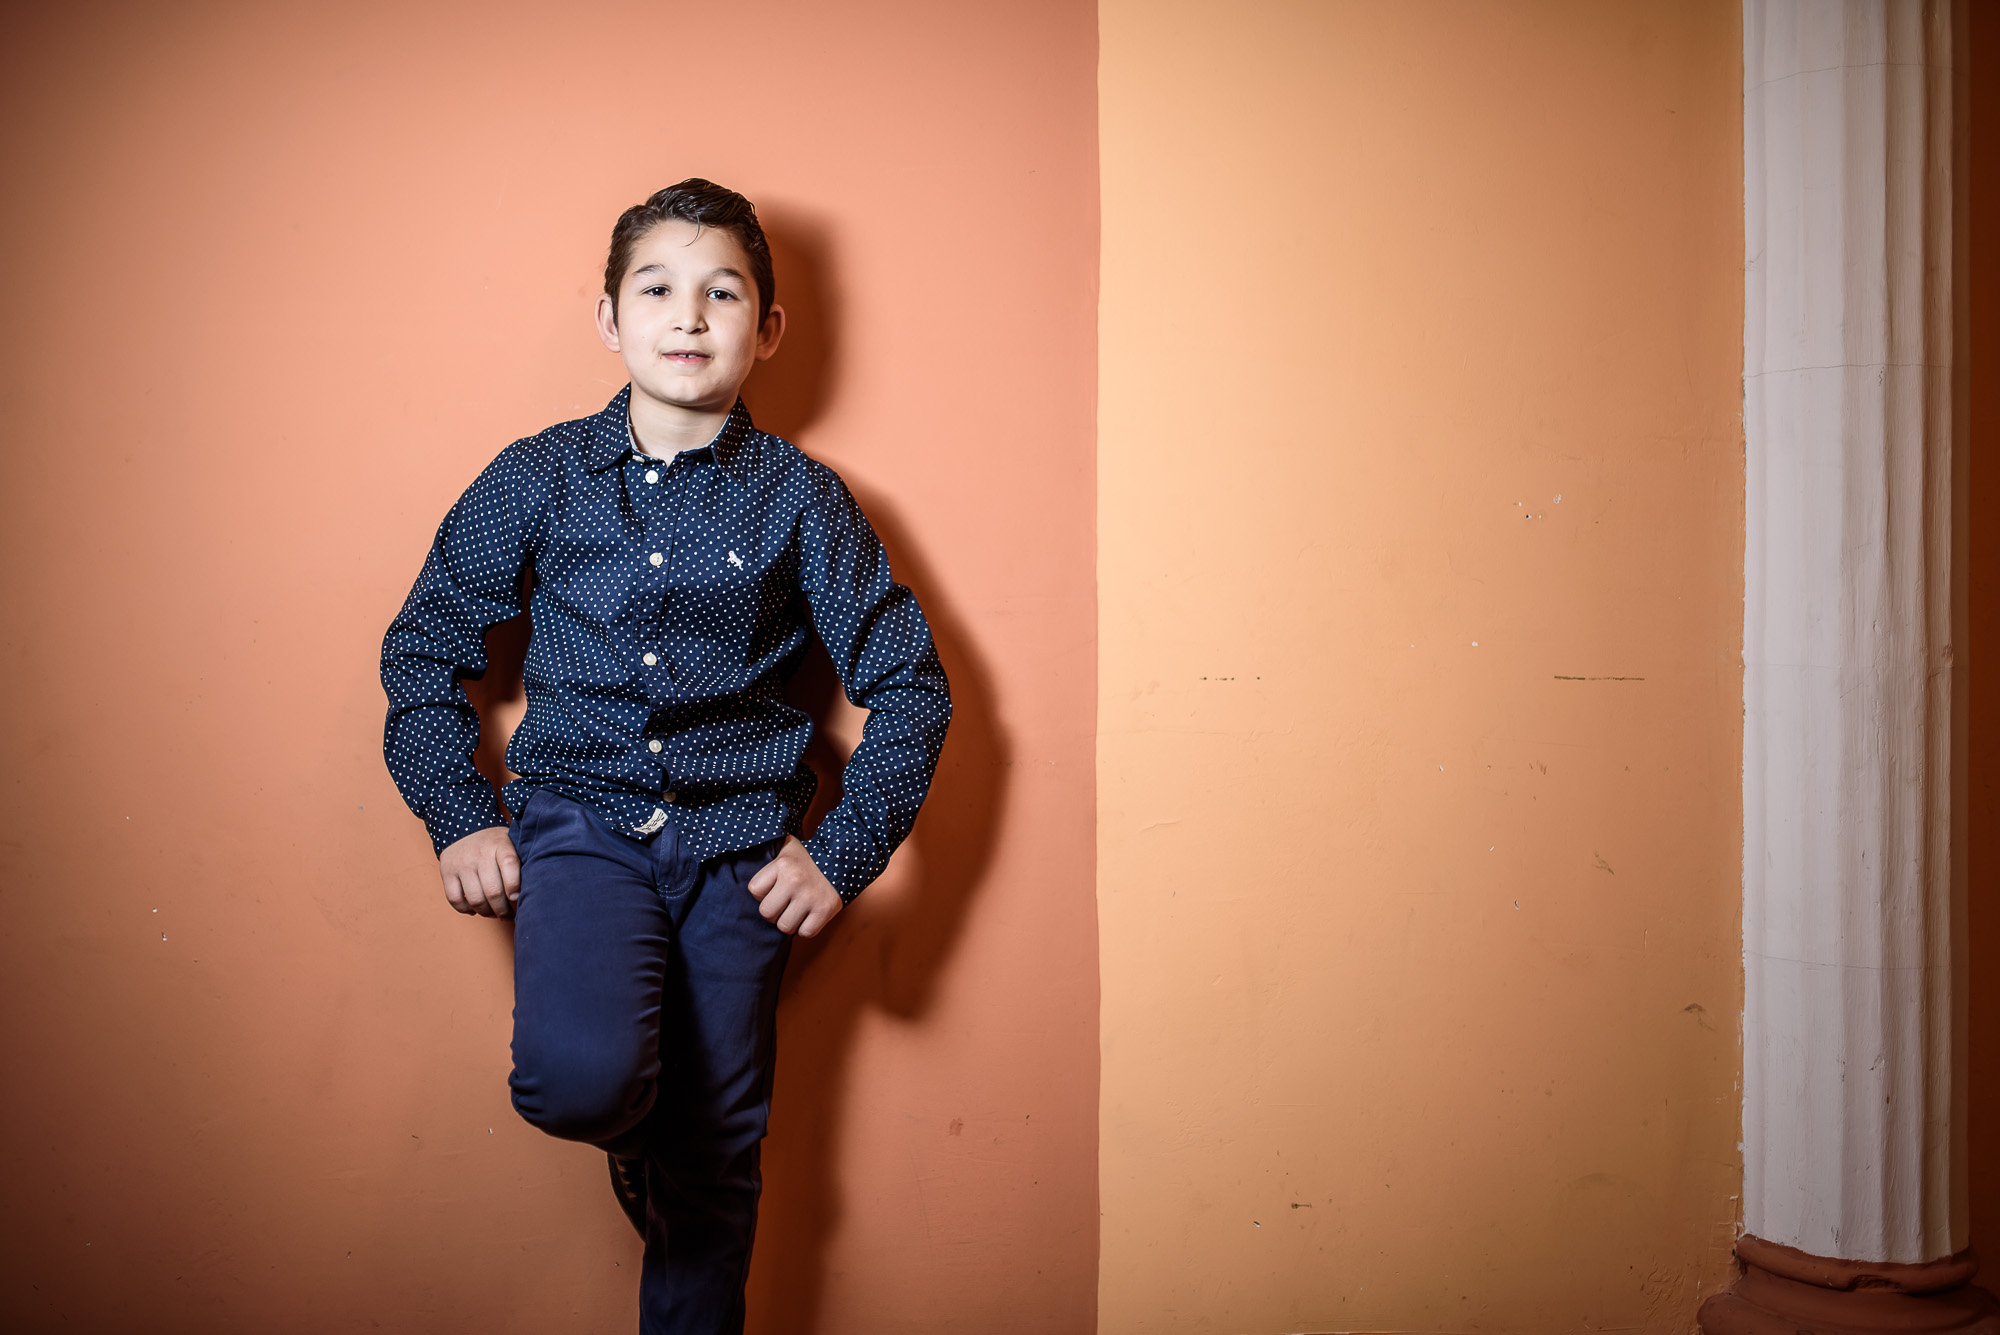 Egy nyolcéves kisfiú, aki hangjával bűvölte el az internet népét